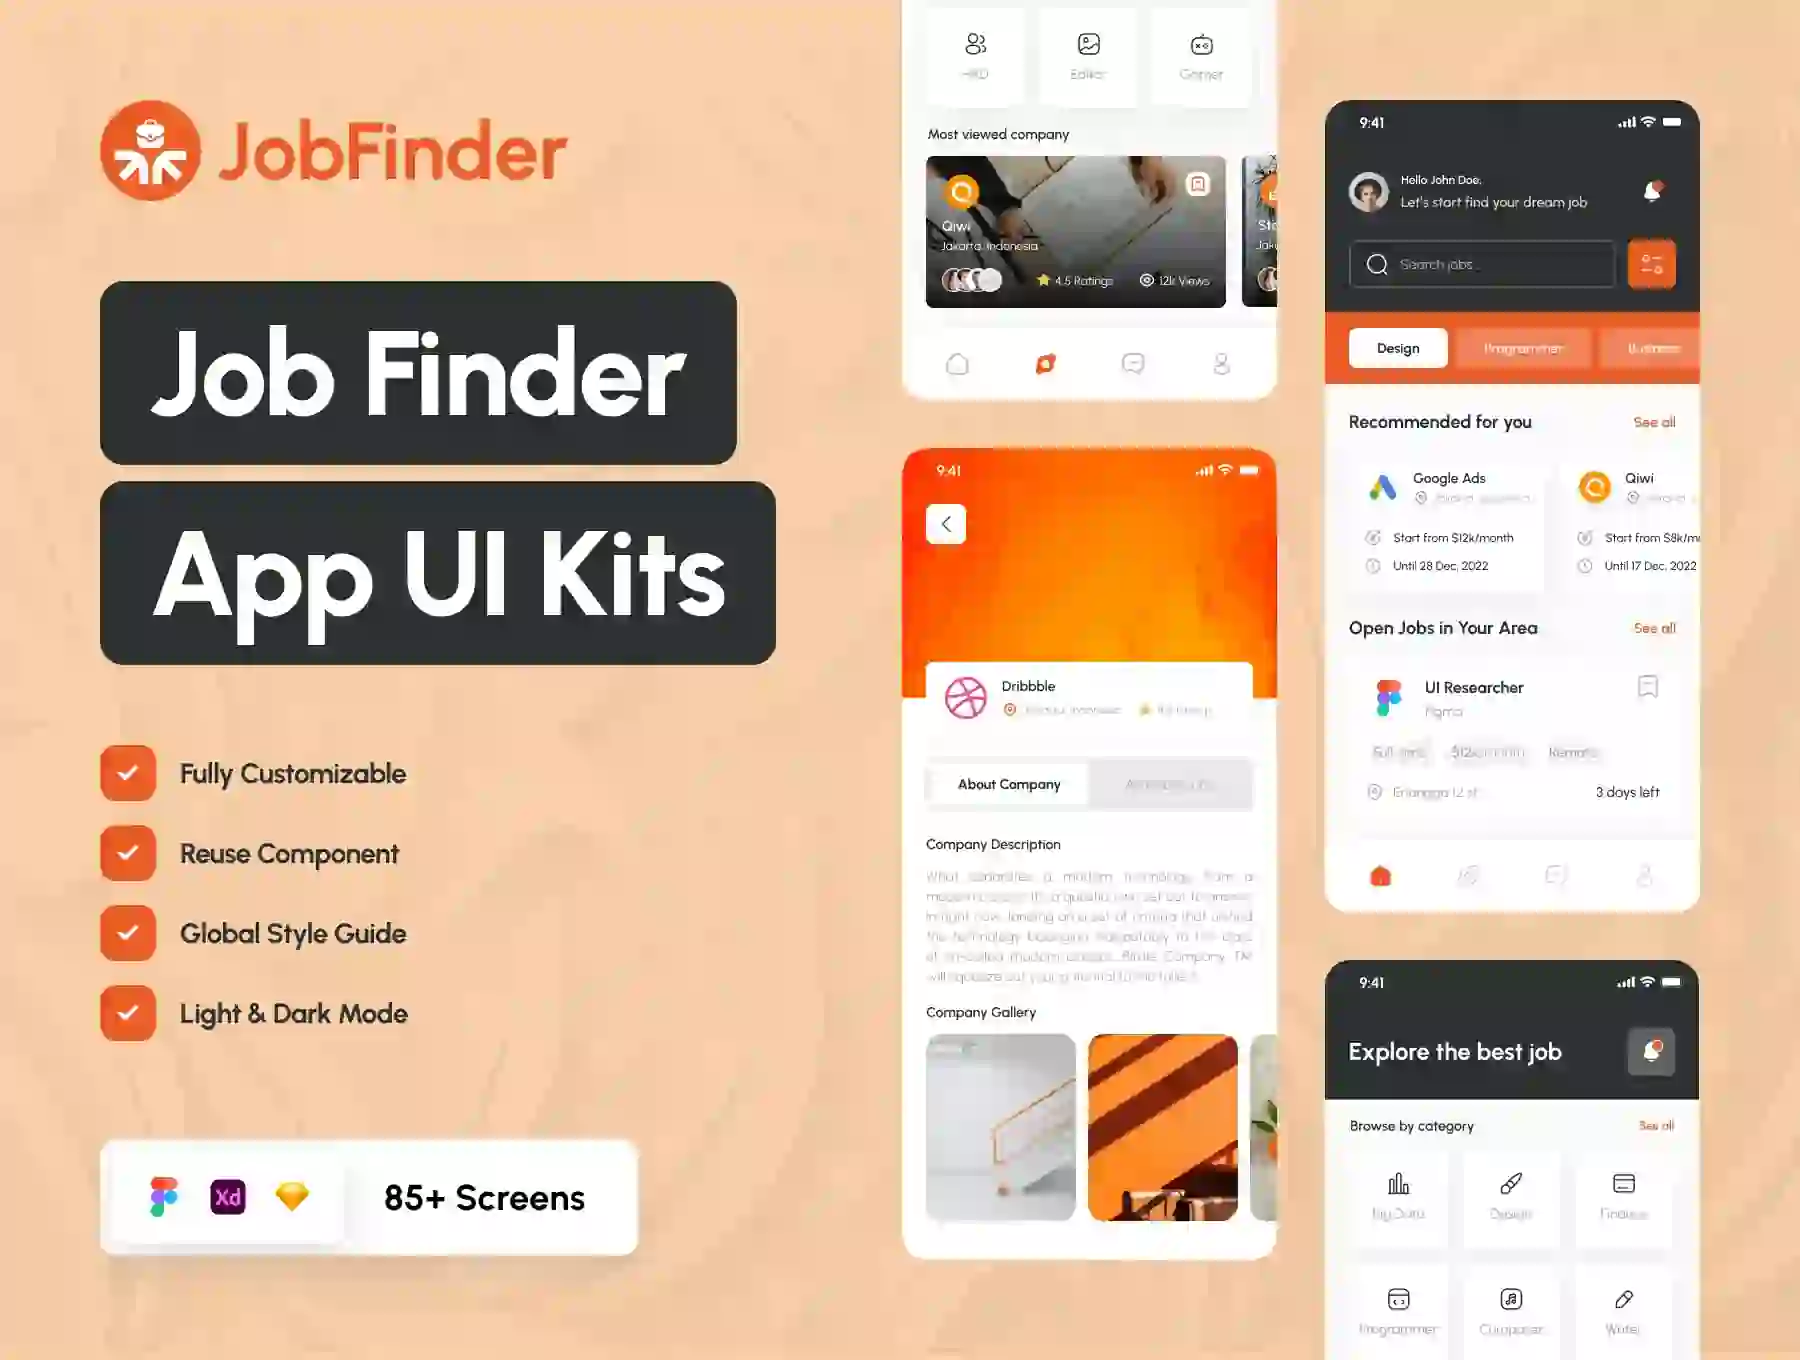 Job Finder Mobile App